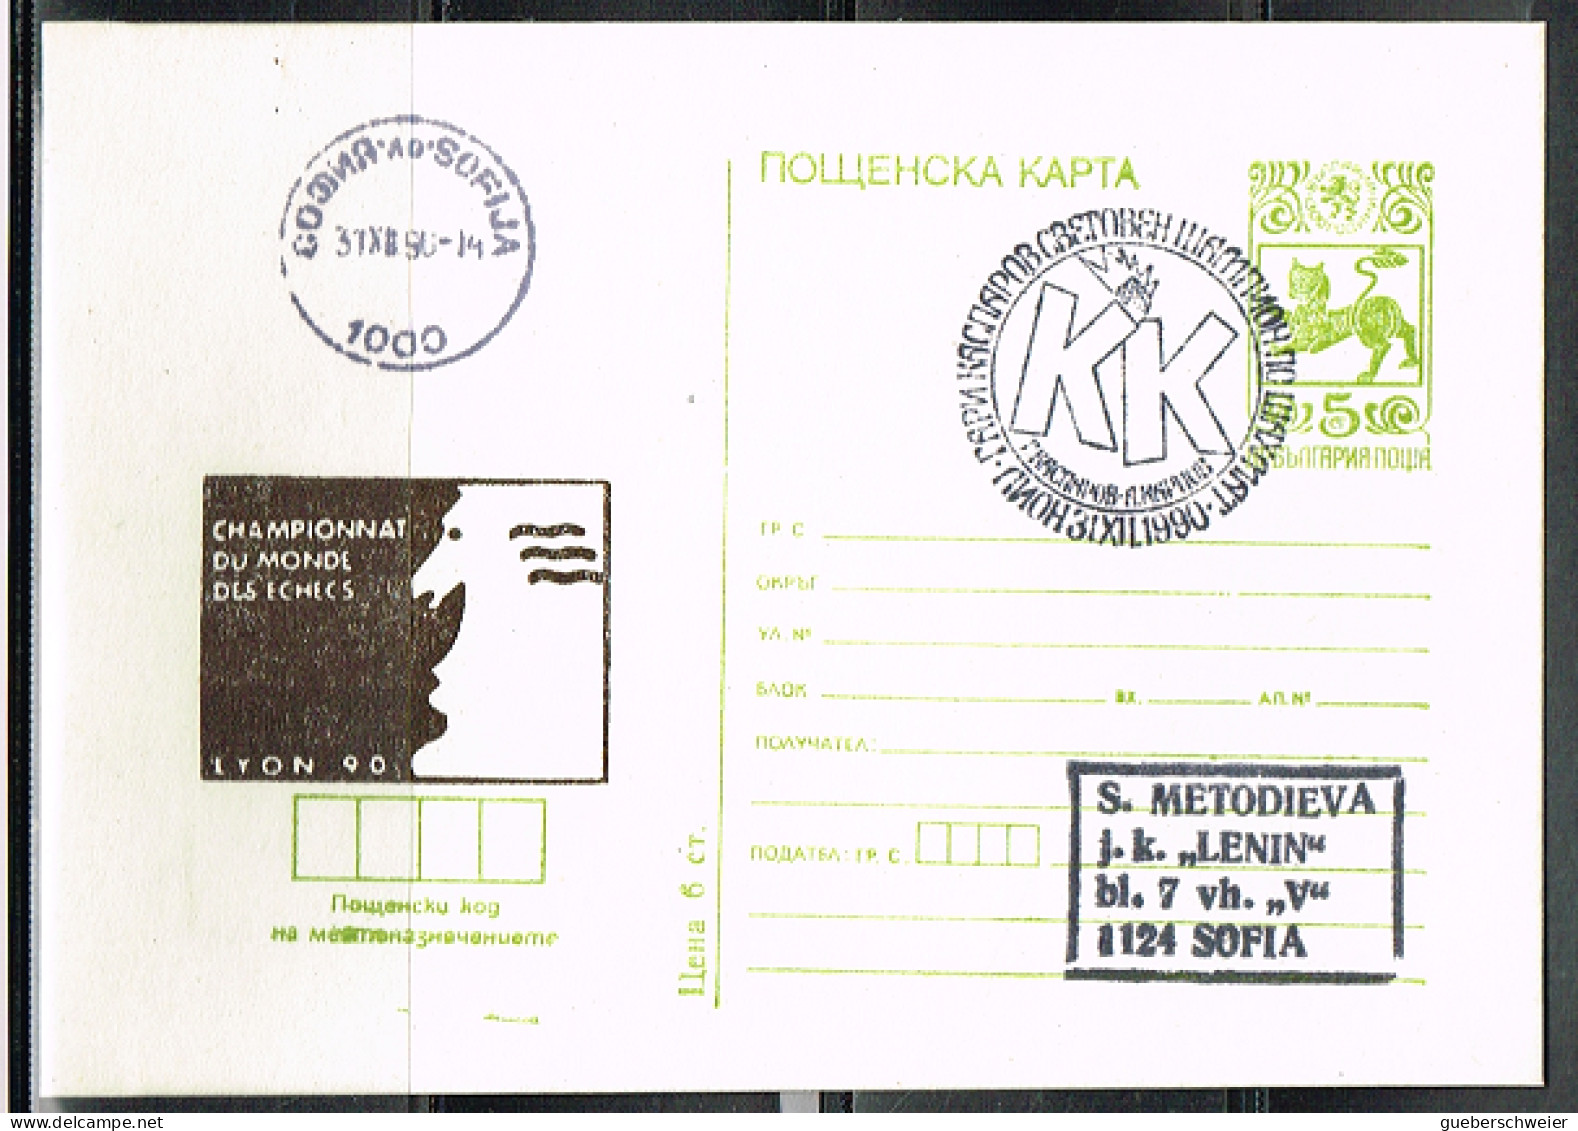 ECH L 25 - BULGARIE Entier Postal Illustré Championnat Du Monde D'Echecs  Lyon 1990 - Postcards